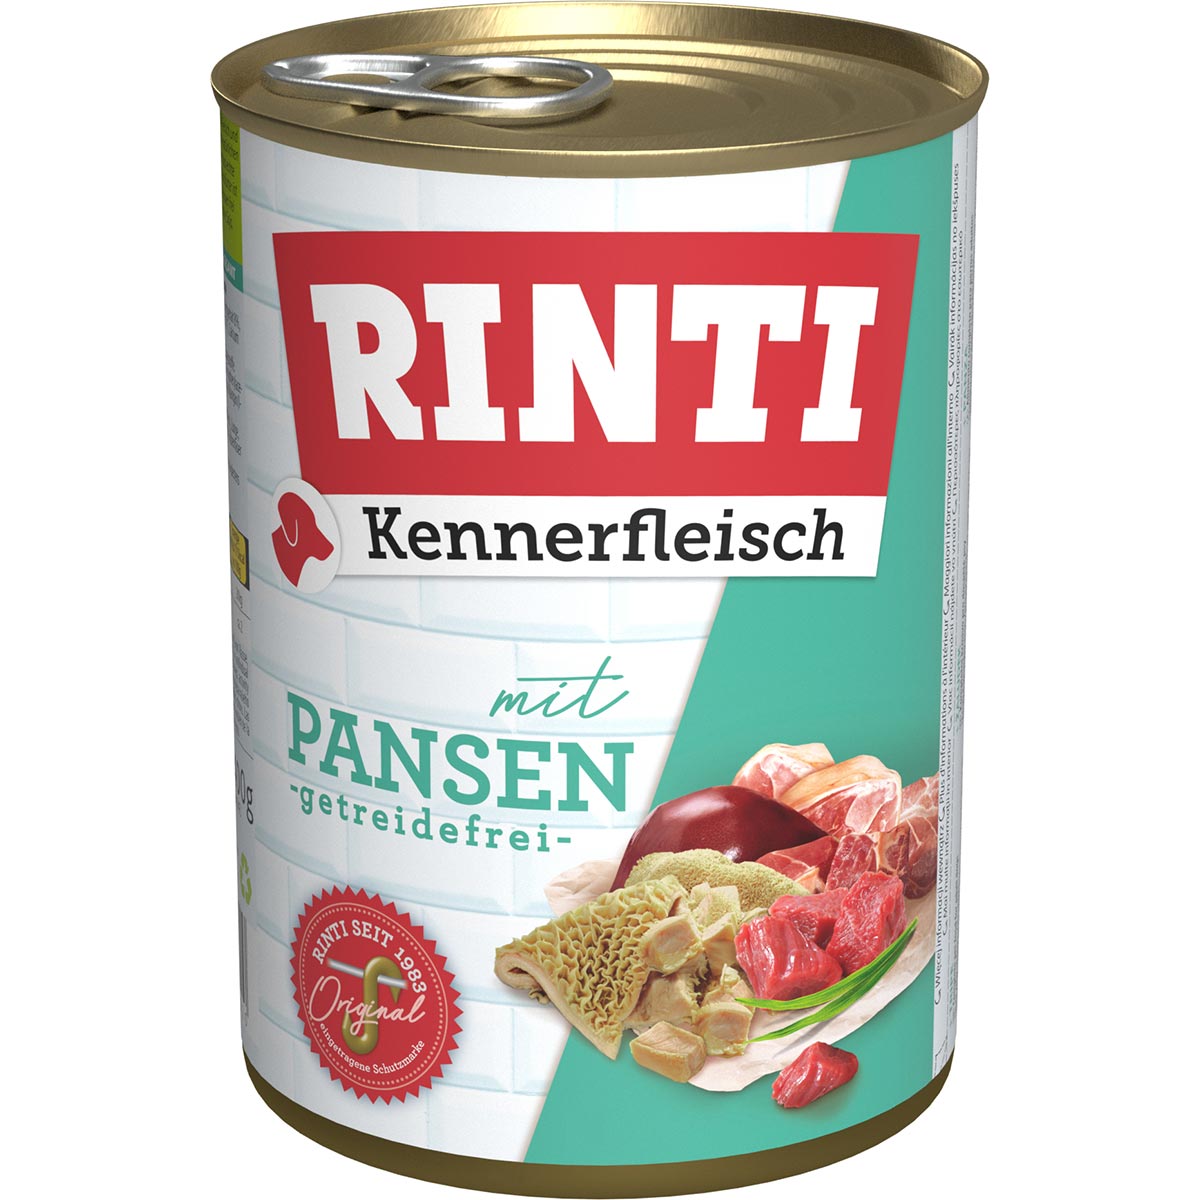 Rinti Kennerfleisch mit Pansen 12x400g von Rinti